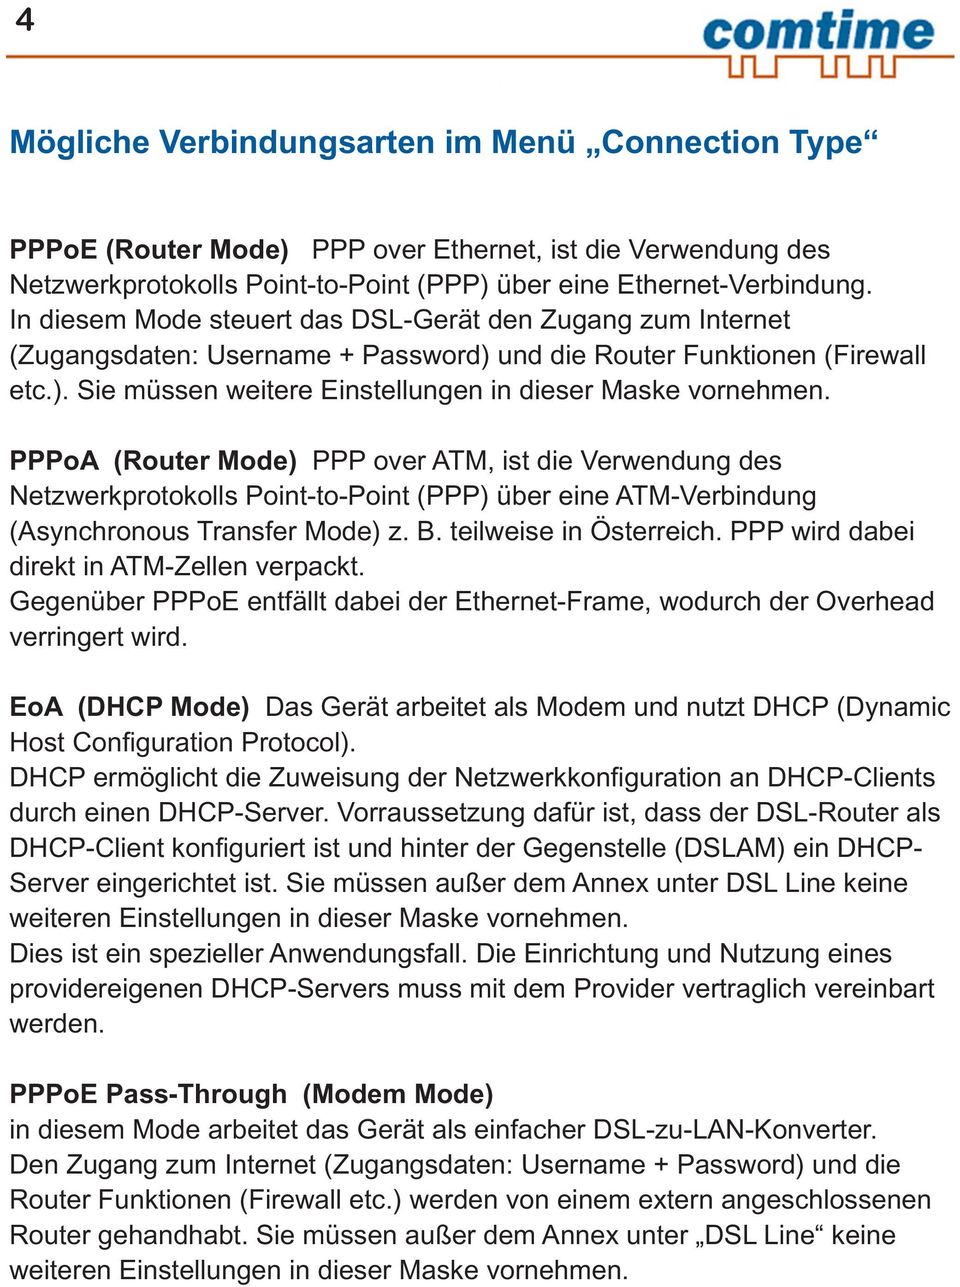 PPPoA (Router Mode) PPP over ATM, ist die Verwendung des Netzwerkprotokolls Point-to-Point (PPP) über eine ATM-Verbindung (Asynchronous Transfer Mode) z. B. teilweise in Österreich.